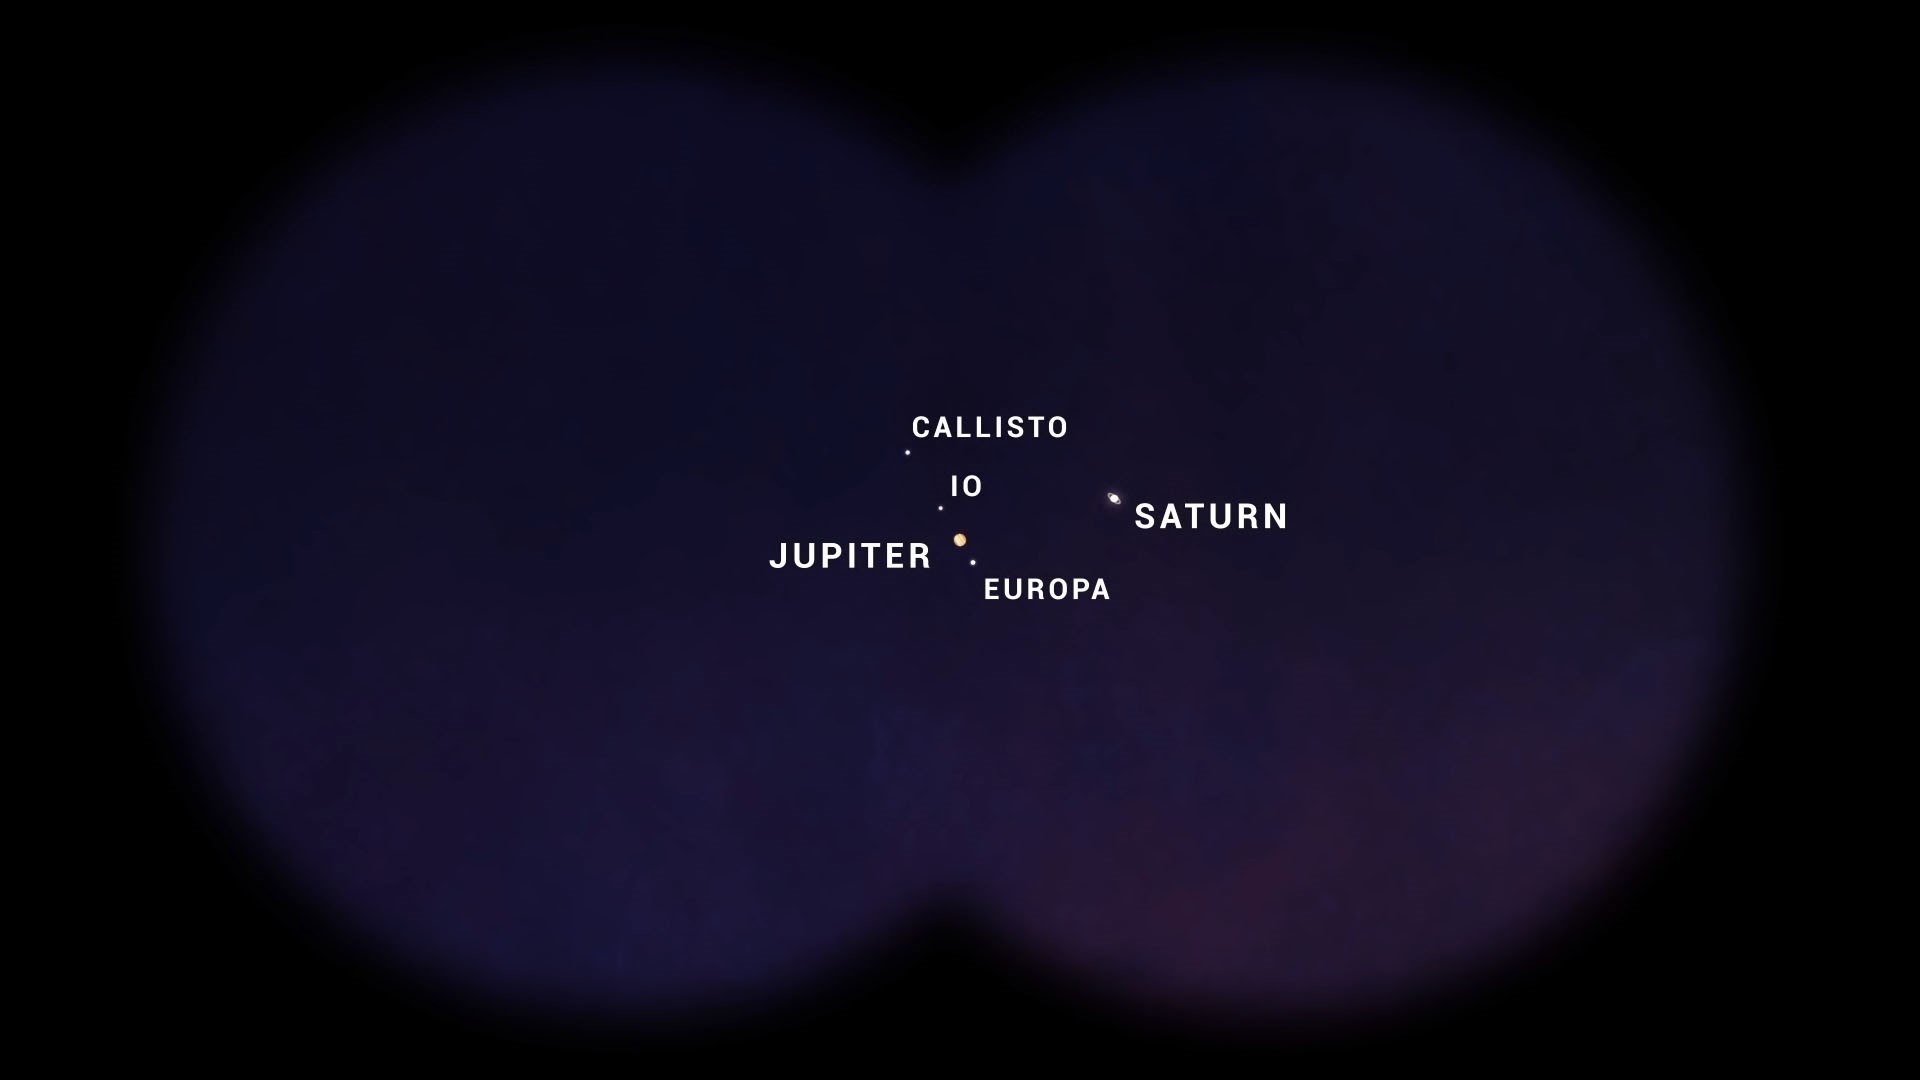 400 yıl sonra gerçekleşen Jüpiter-Satürn kavuşması Ay'dan görüntülendi